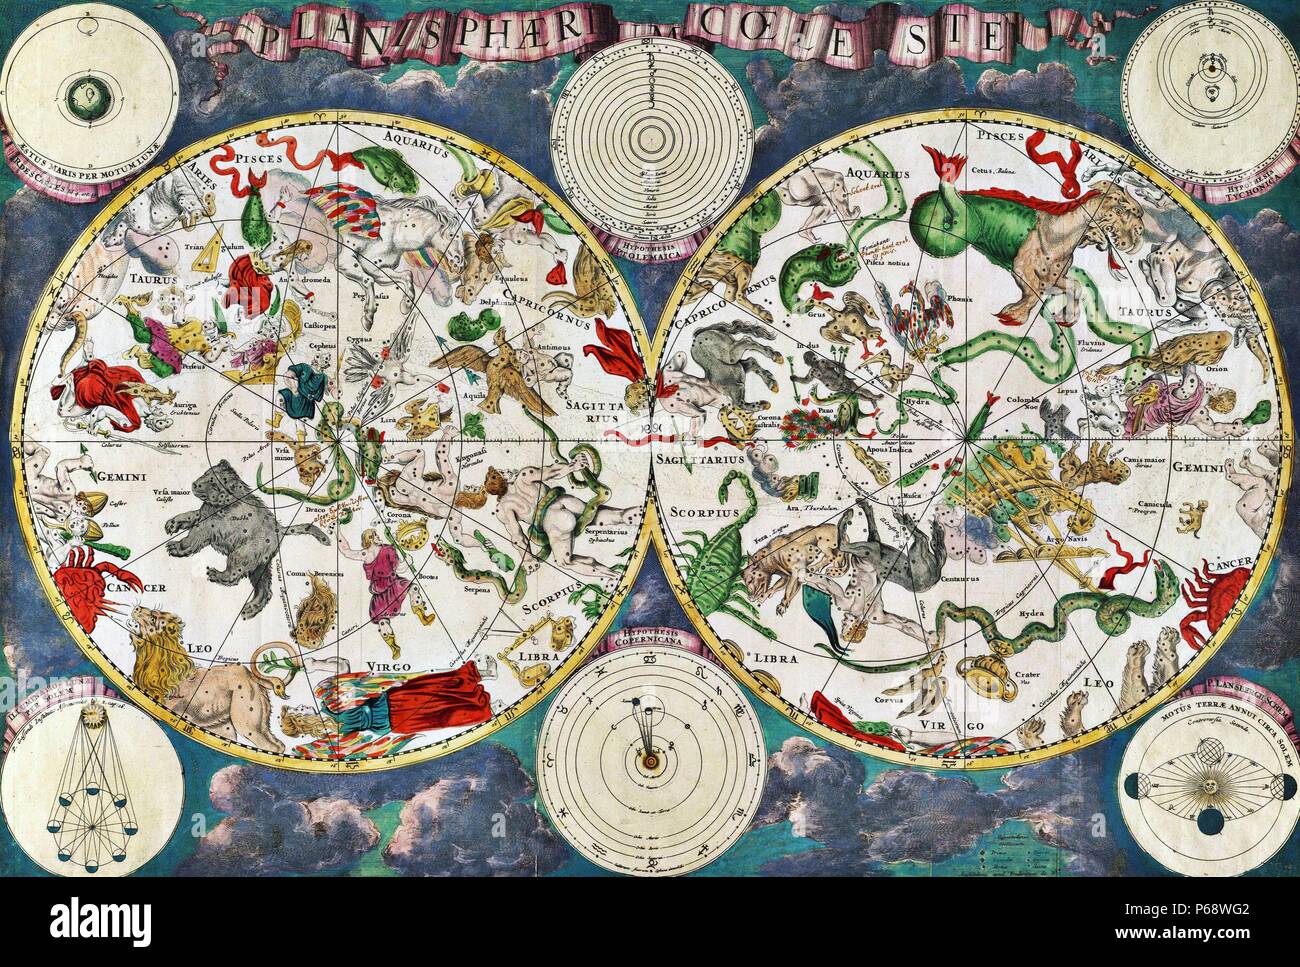 Carte céleste du 17e siècle, par le cartographe hollandais Frederik de Wit. Groupes d'étoiles et astrologiques et signes du zodiaque sont représentés Banque D'Images